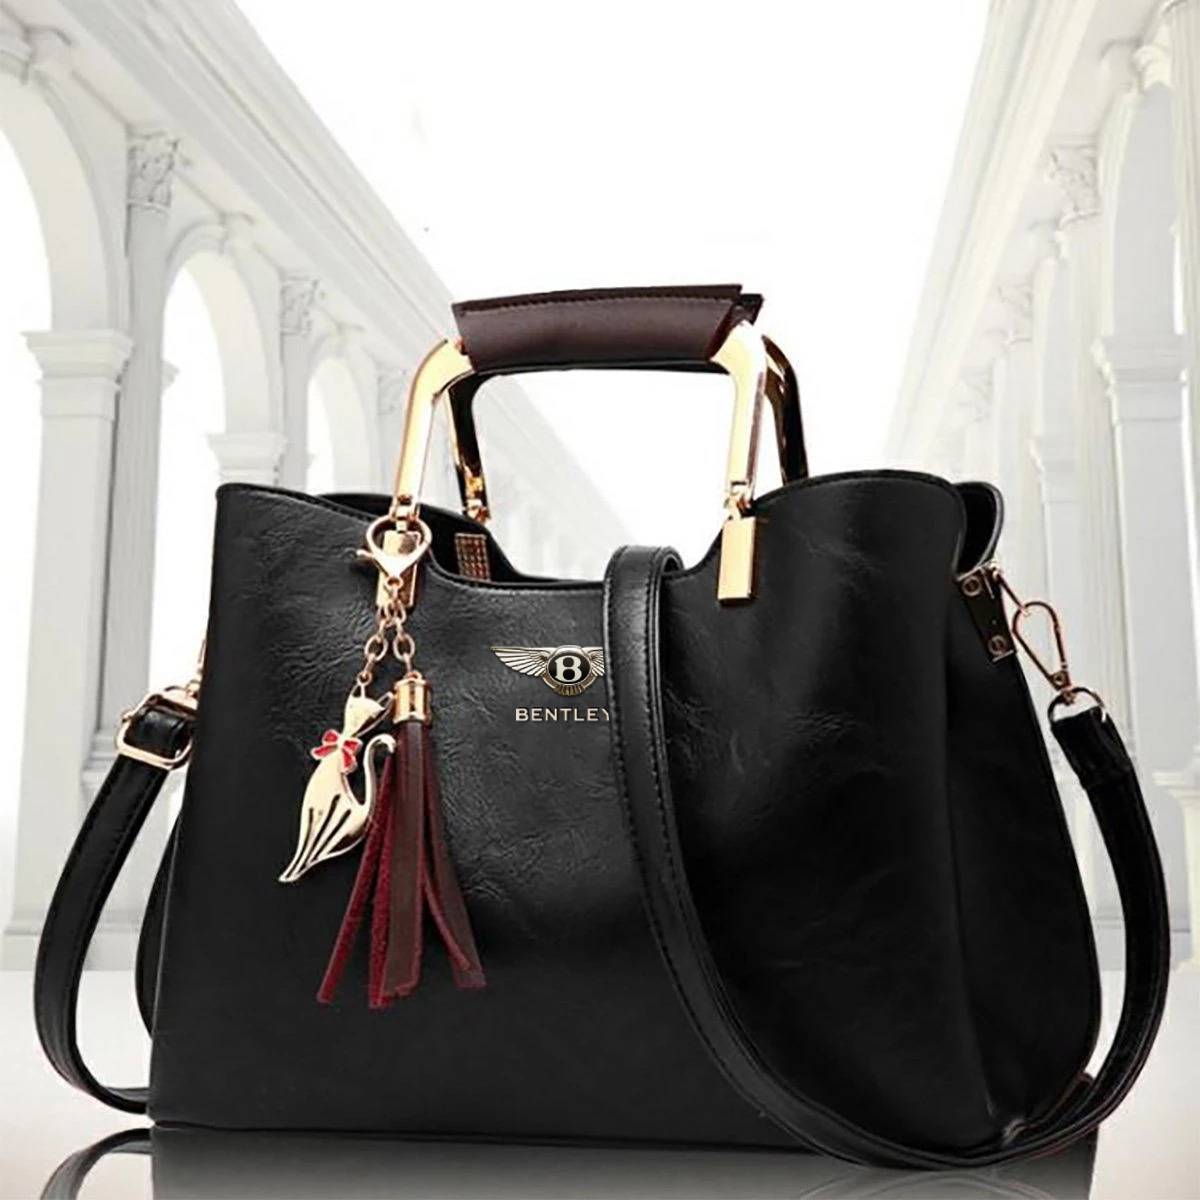 Sell designer handbags and purses online - Sell Handbags Online